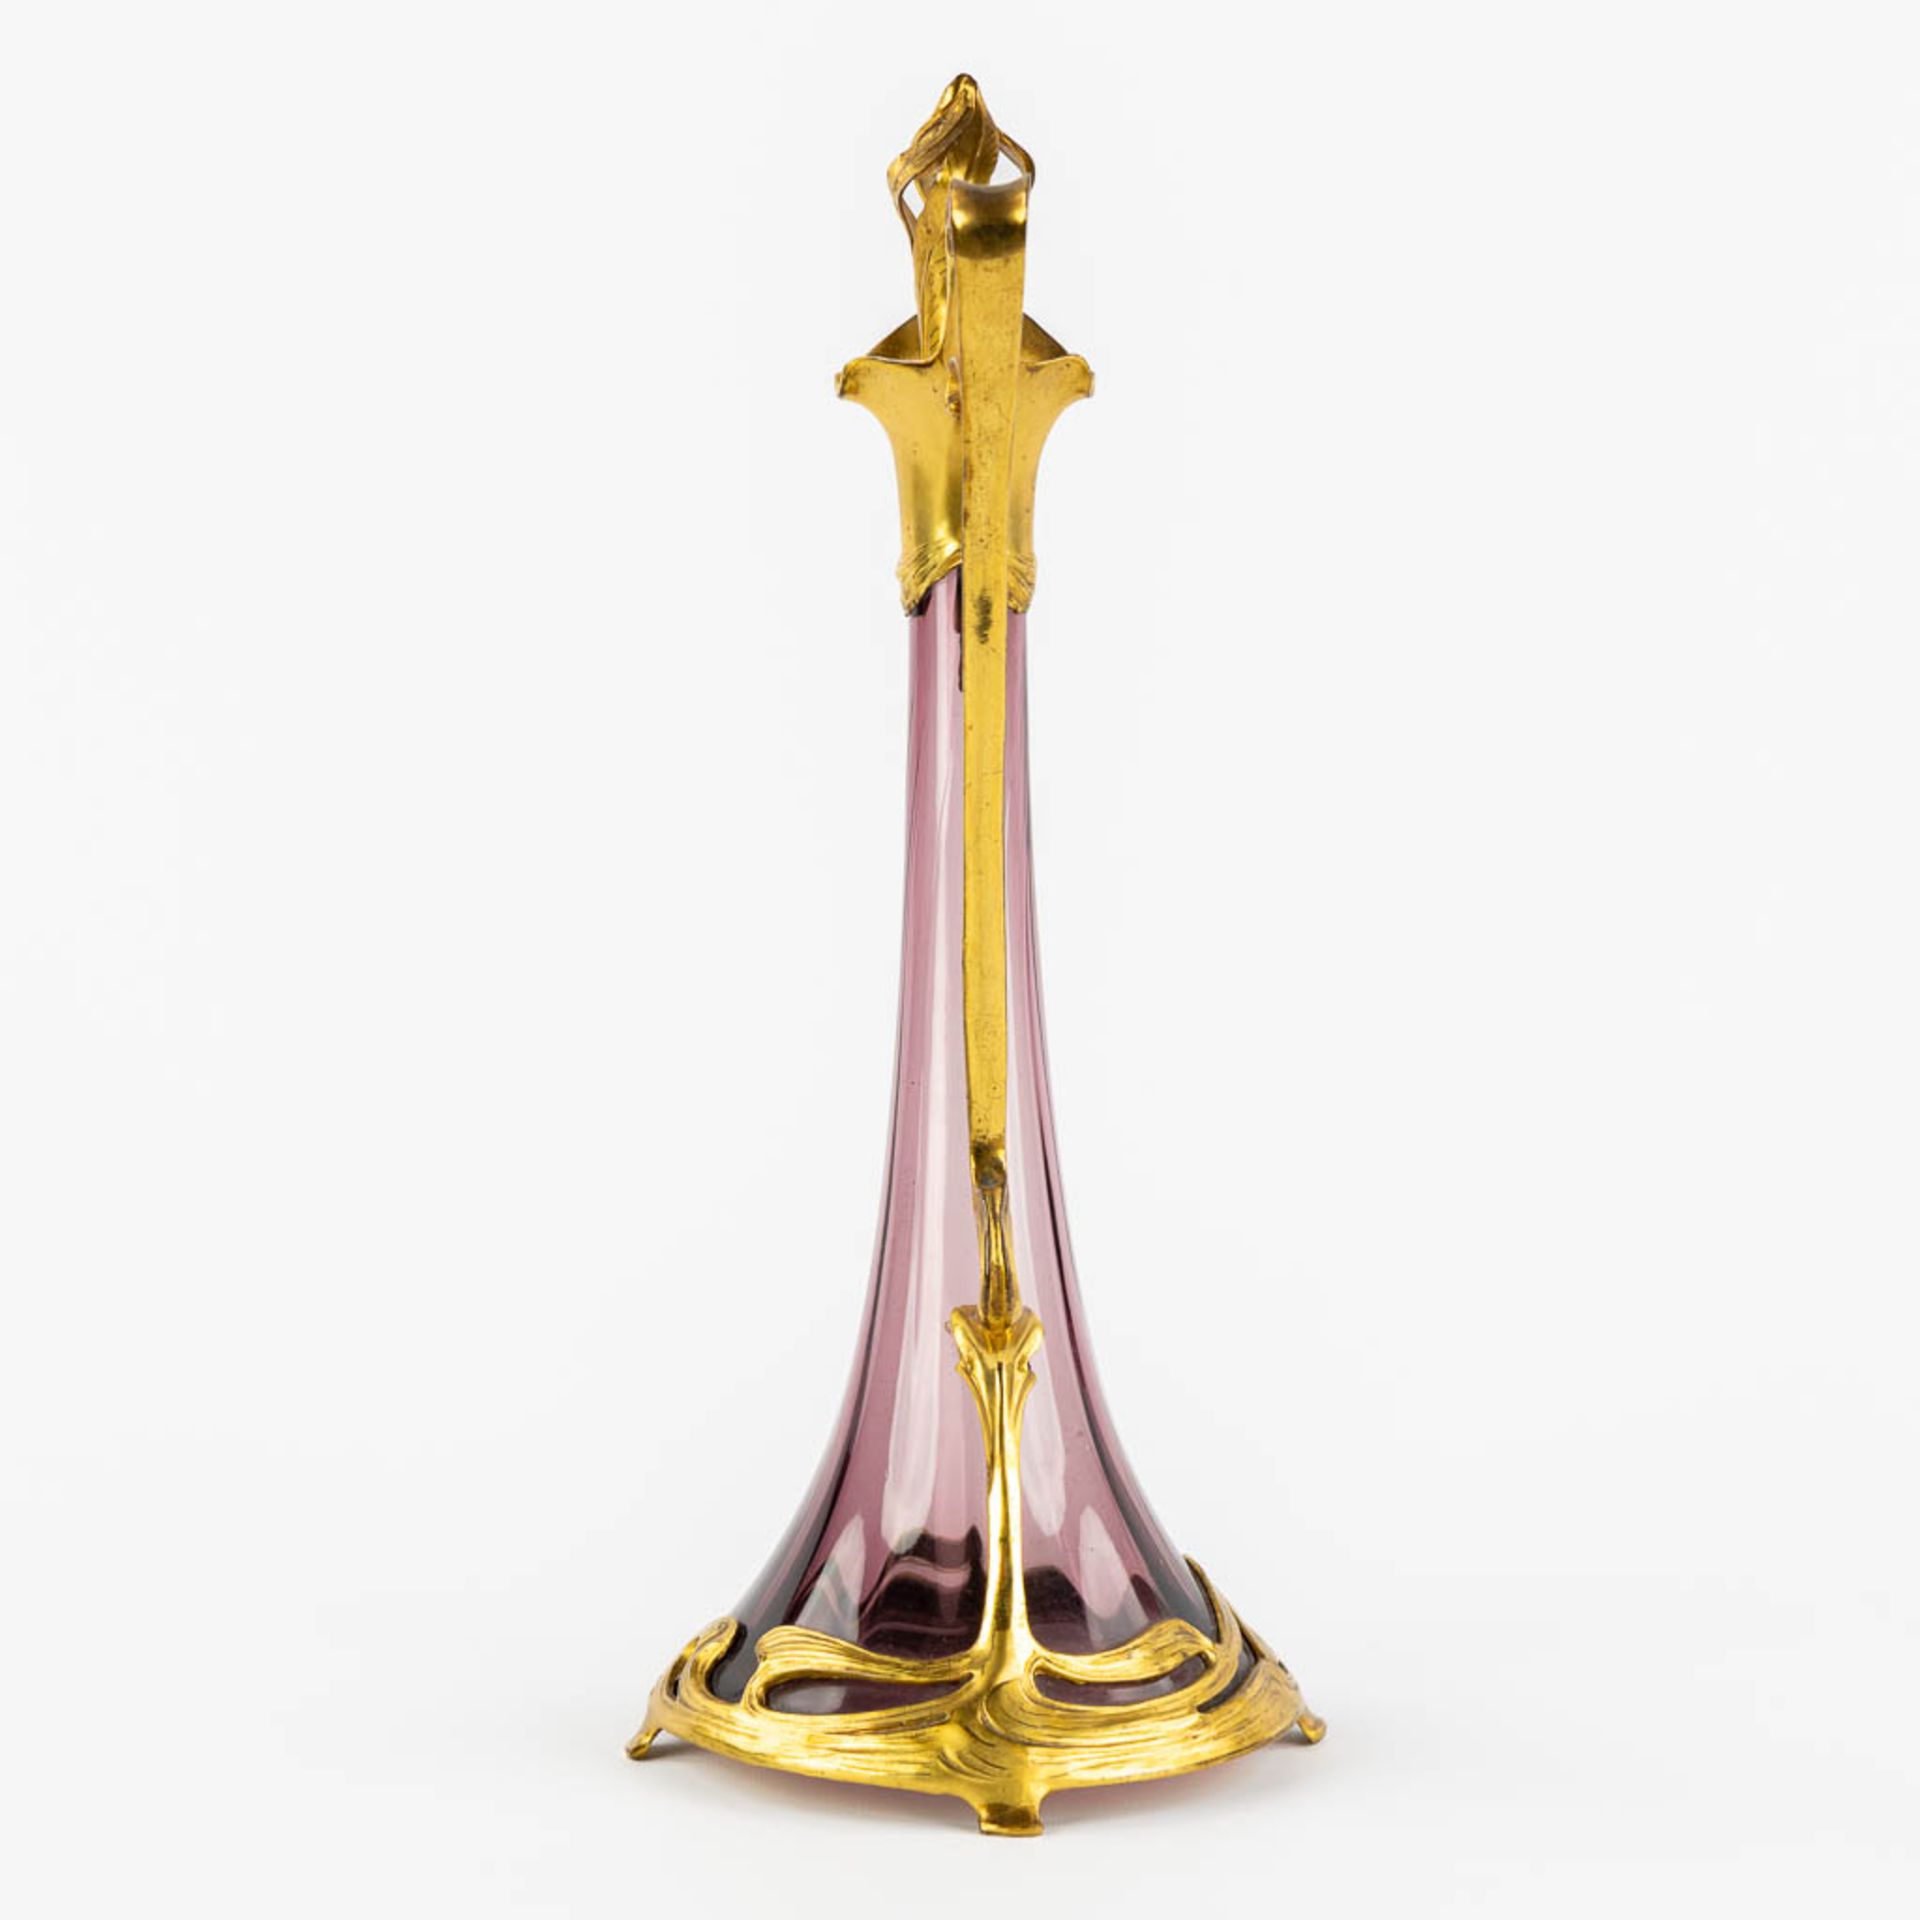 A pitcher, gilt metal and purple glass, Art Nouveau. (L:16 x W:20 x H:39 cm) - Image 4 of 11